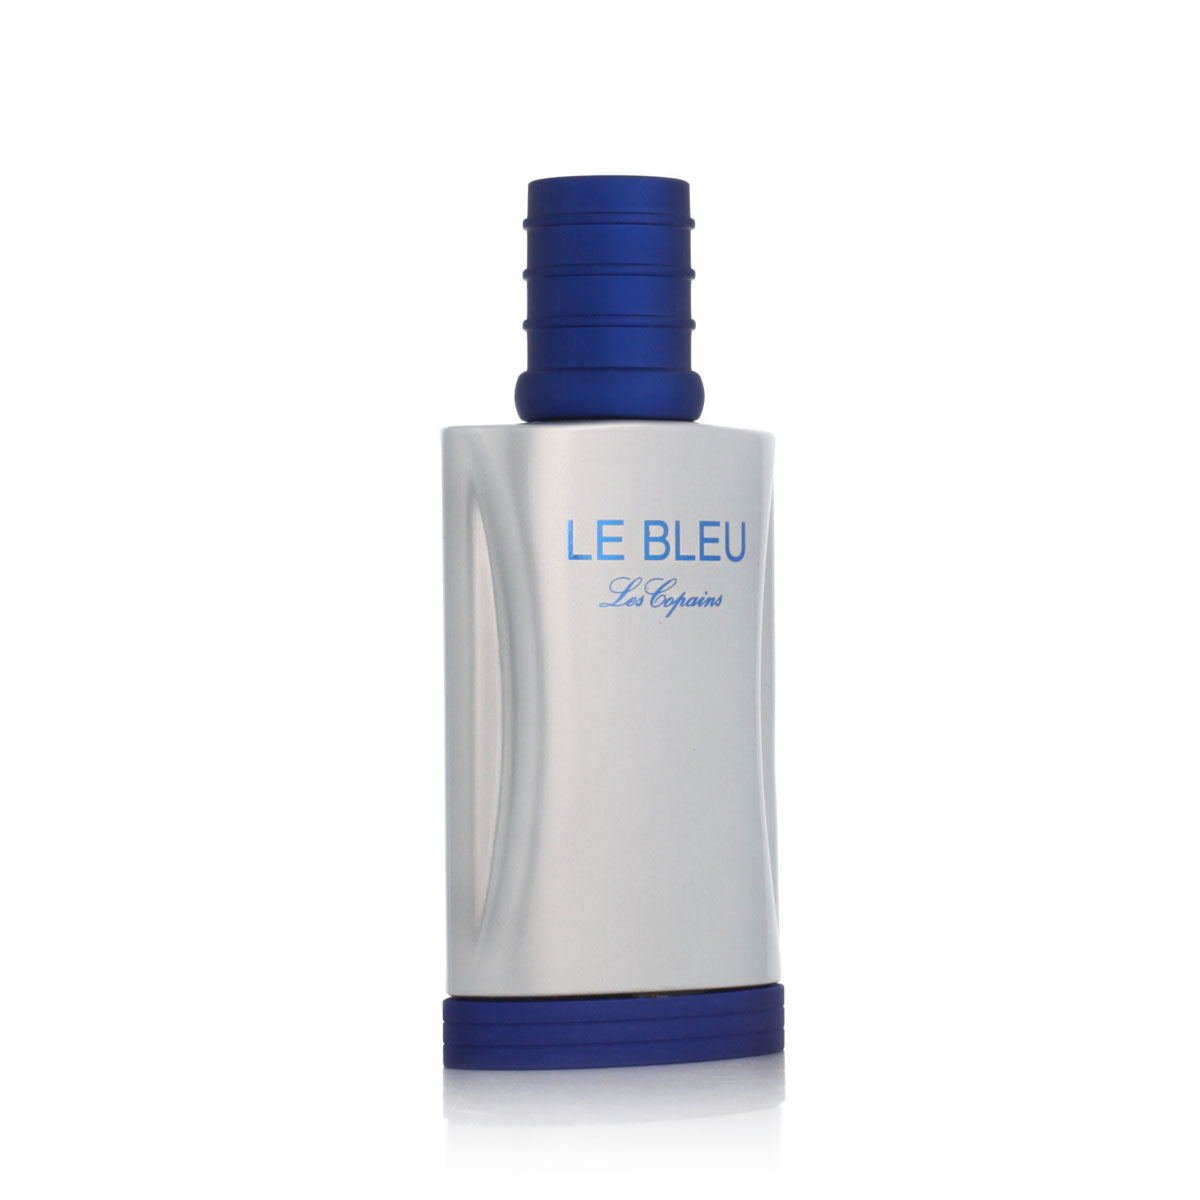 Herenparfum Les Copains EDT Le Bleu (50 ml)